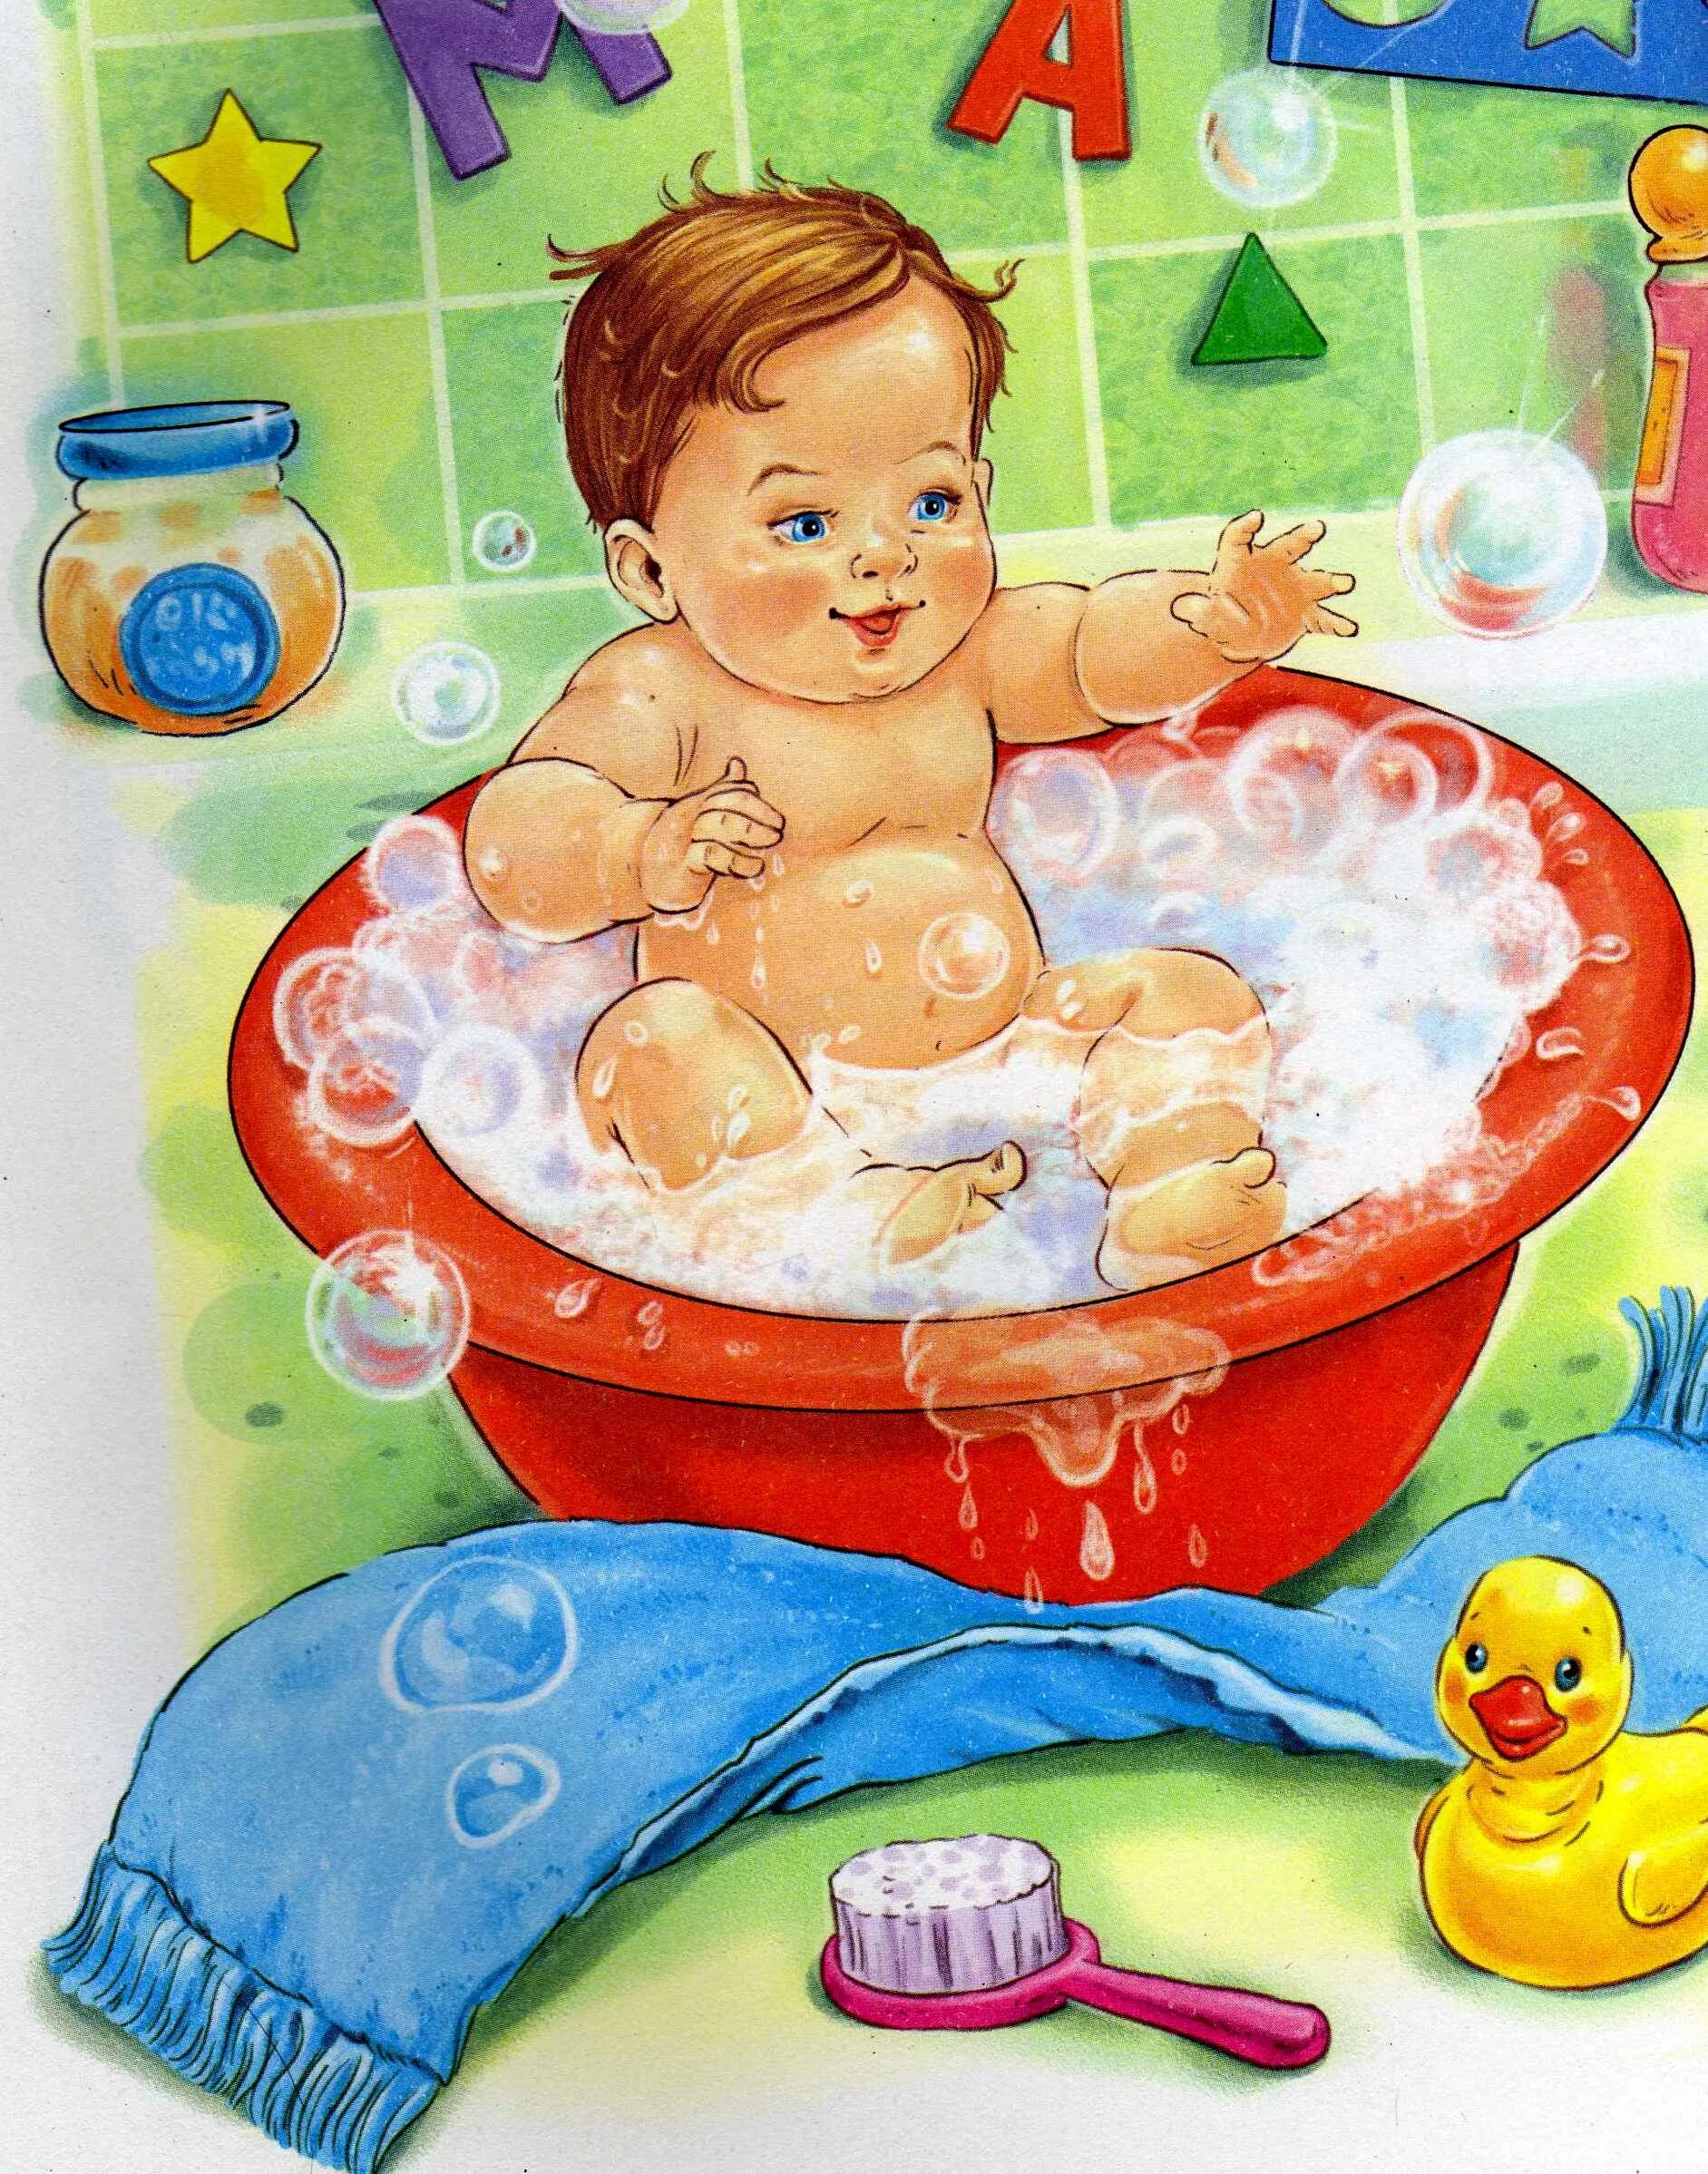 Купание рисунок. Купание малыша. Малыш в ванной иллюстрация. Купание в ванной иллюстрация. Малыш в ванной.